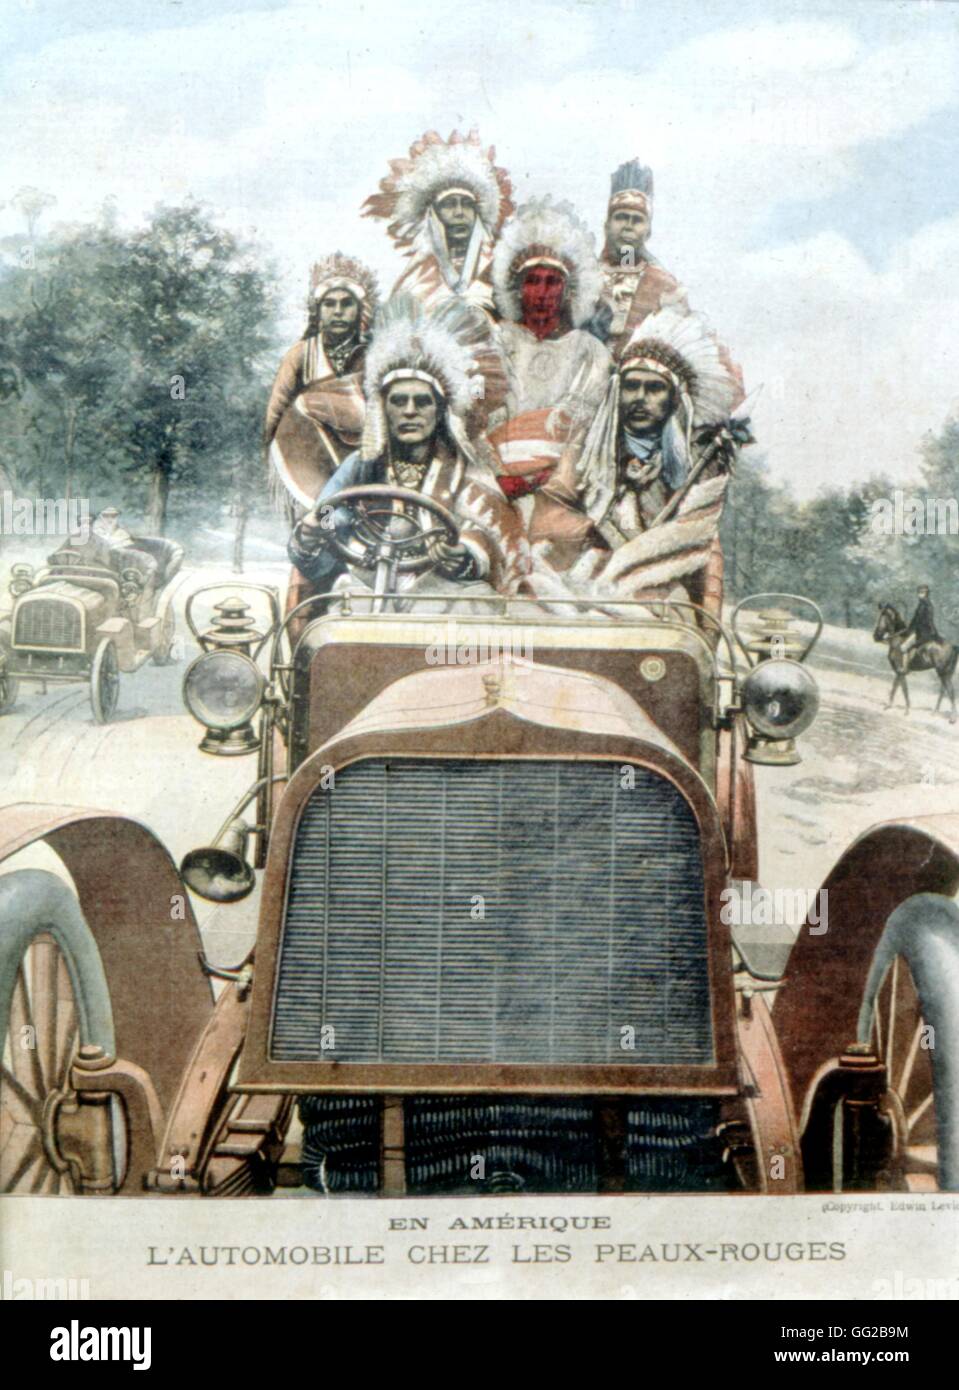 Les Indiens et l'automobile, dans 'Le Petit Journal' c.1900 United States Rousseau collection Banque D'Images